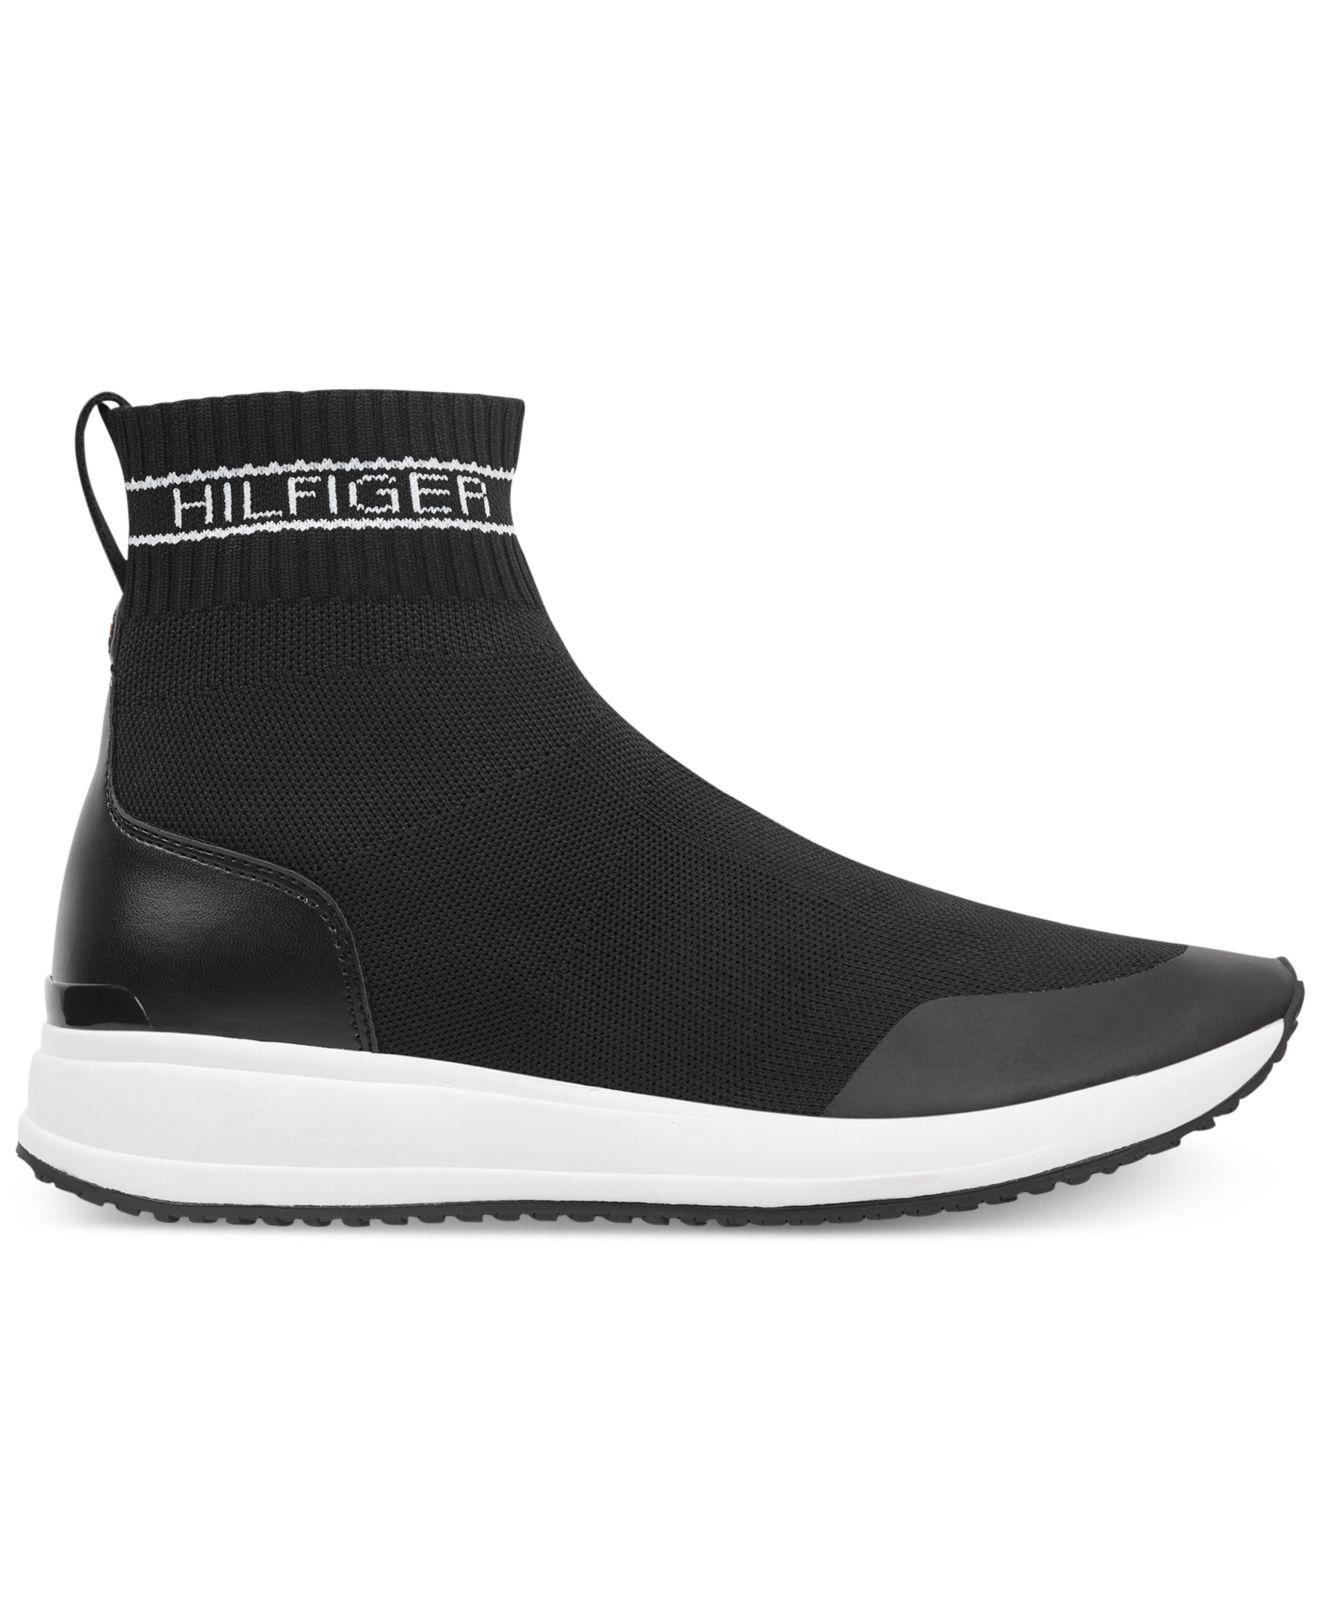 Tommy Hilfiger Sock Sneakers Store - www.ladyg.co.uk 1693581733